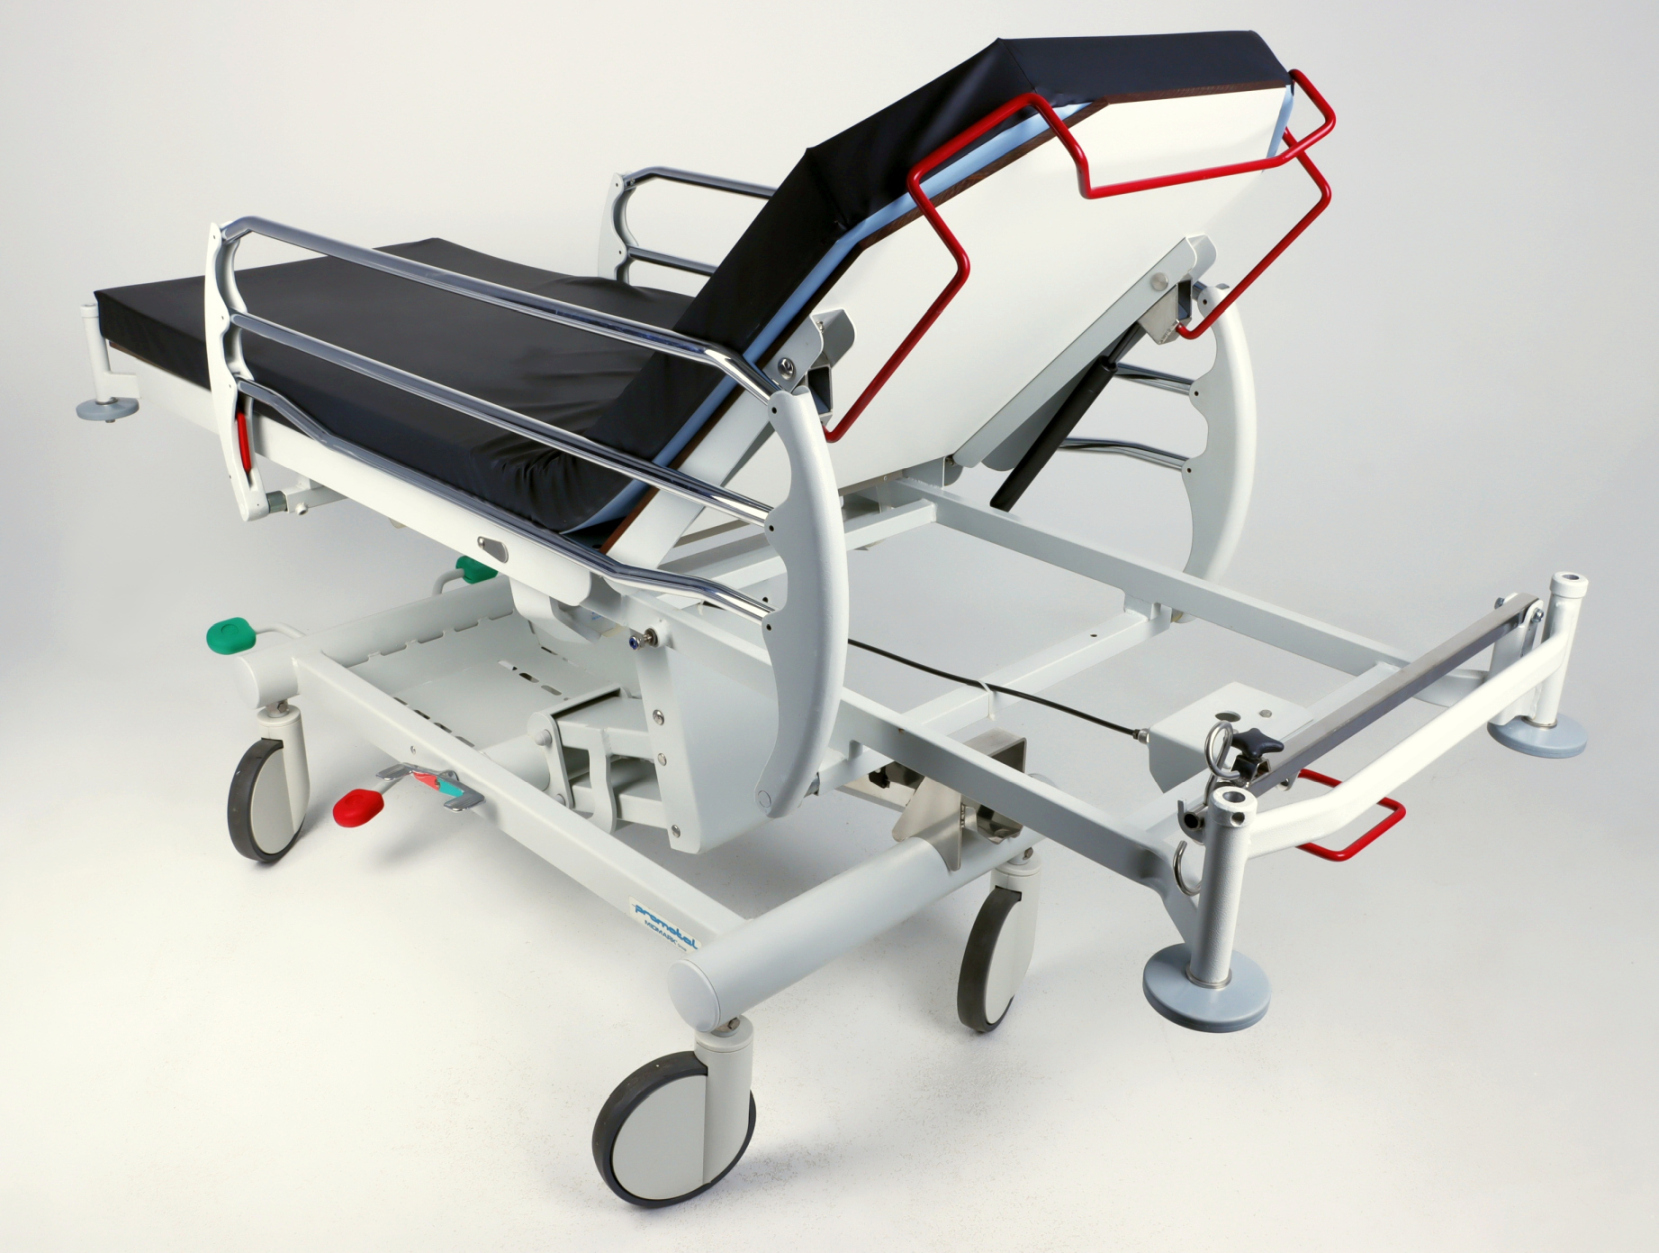 Wózki transportowe w pozycji leżącej używane B/D Midmark Promotal 0021550 - Praiston rekondycjonowany